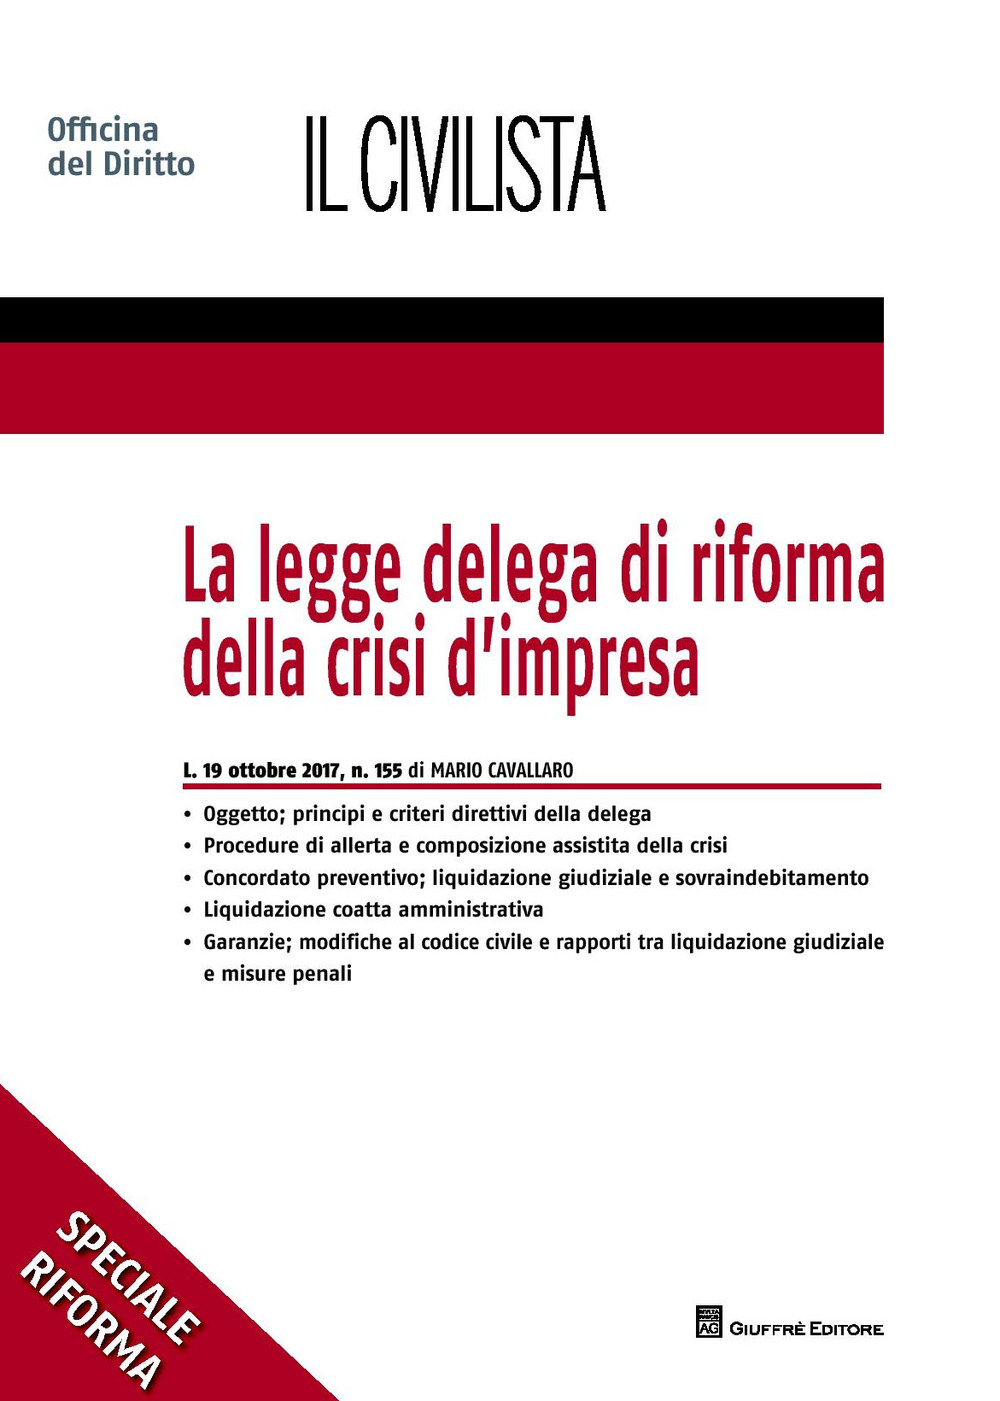 Image of La legge delega di riforma della crisi d'impresa